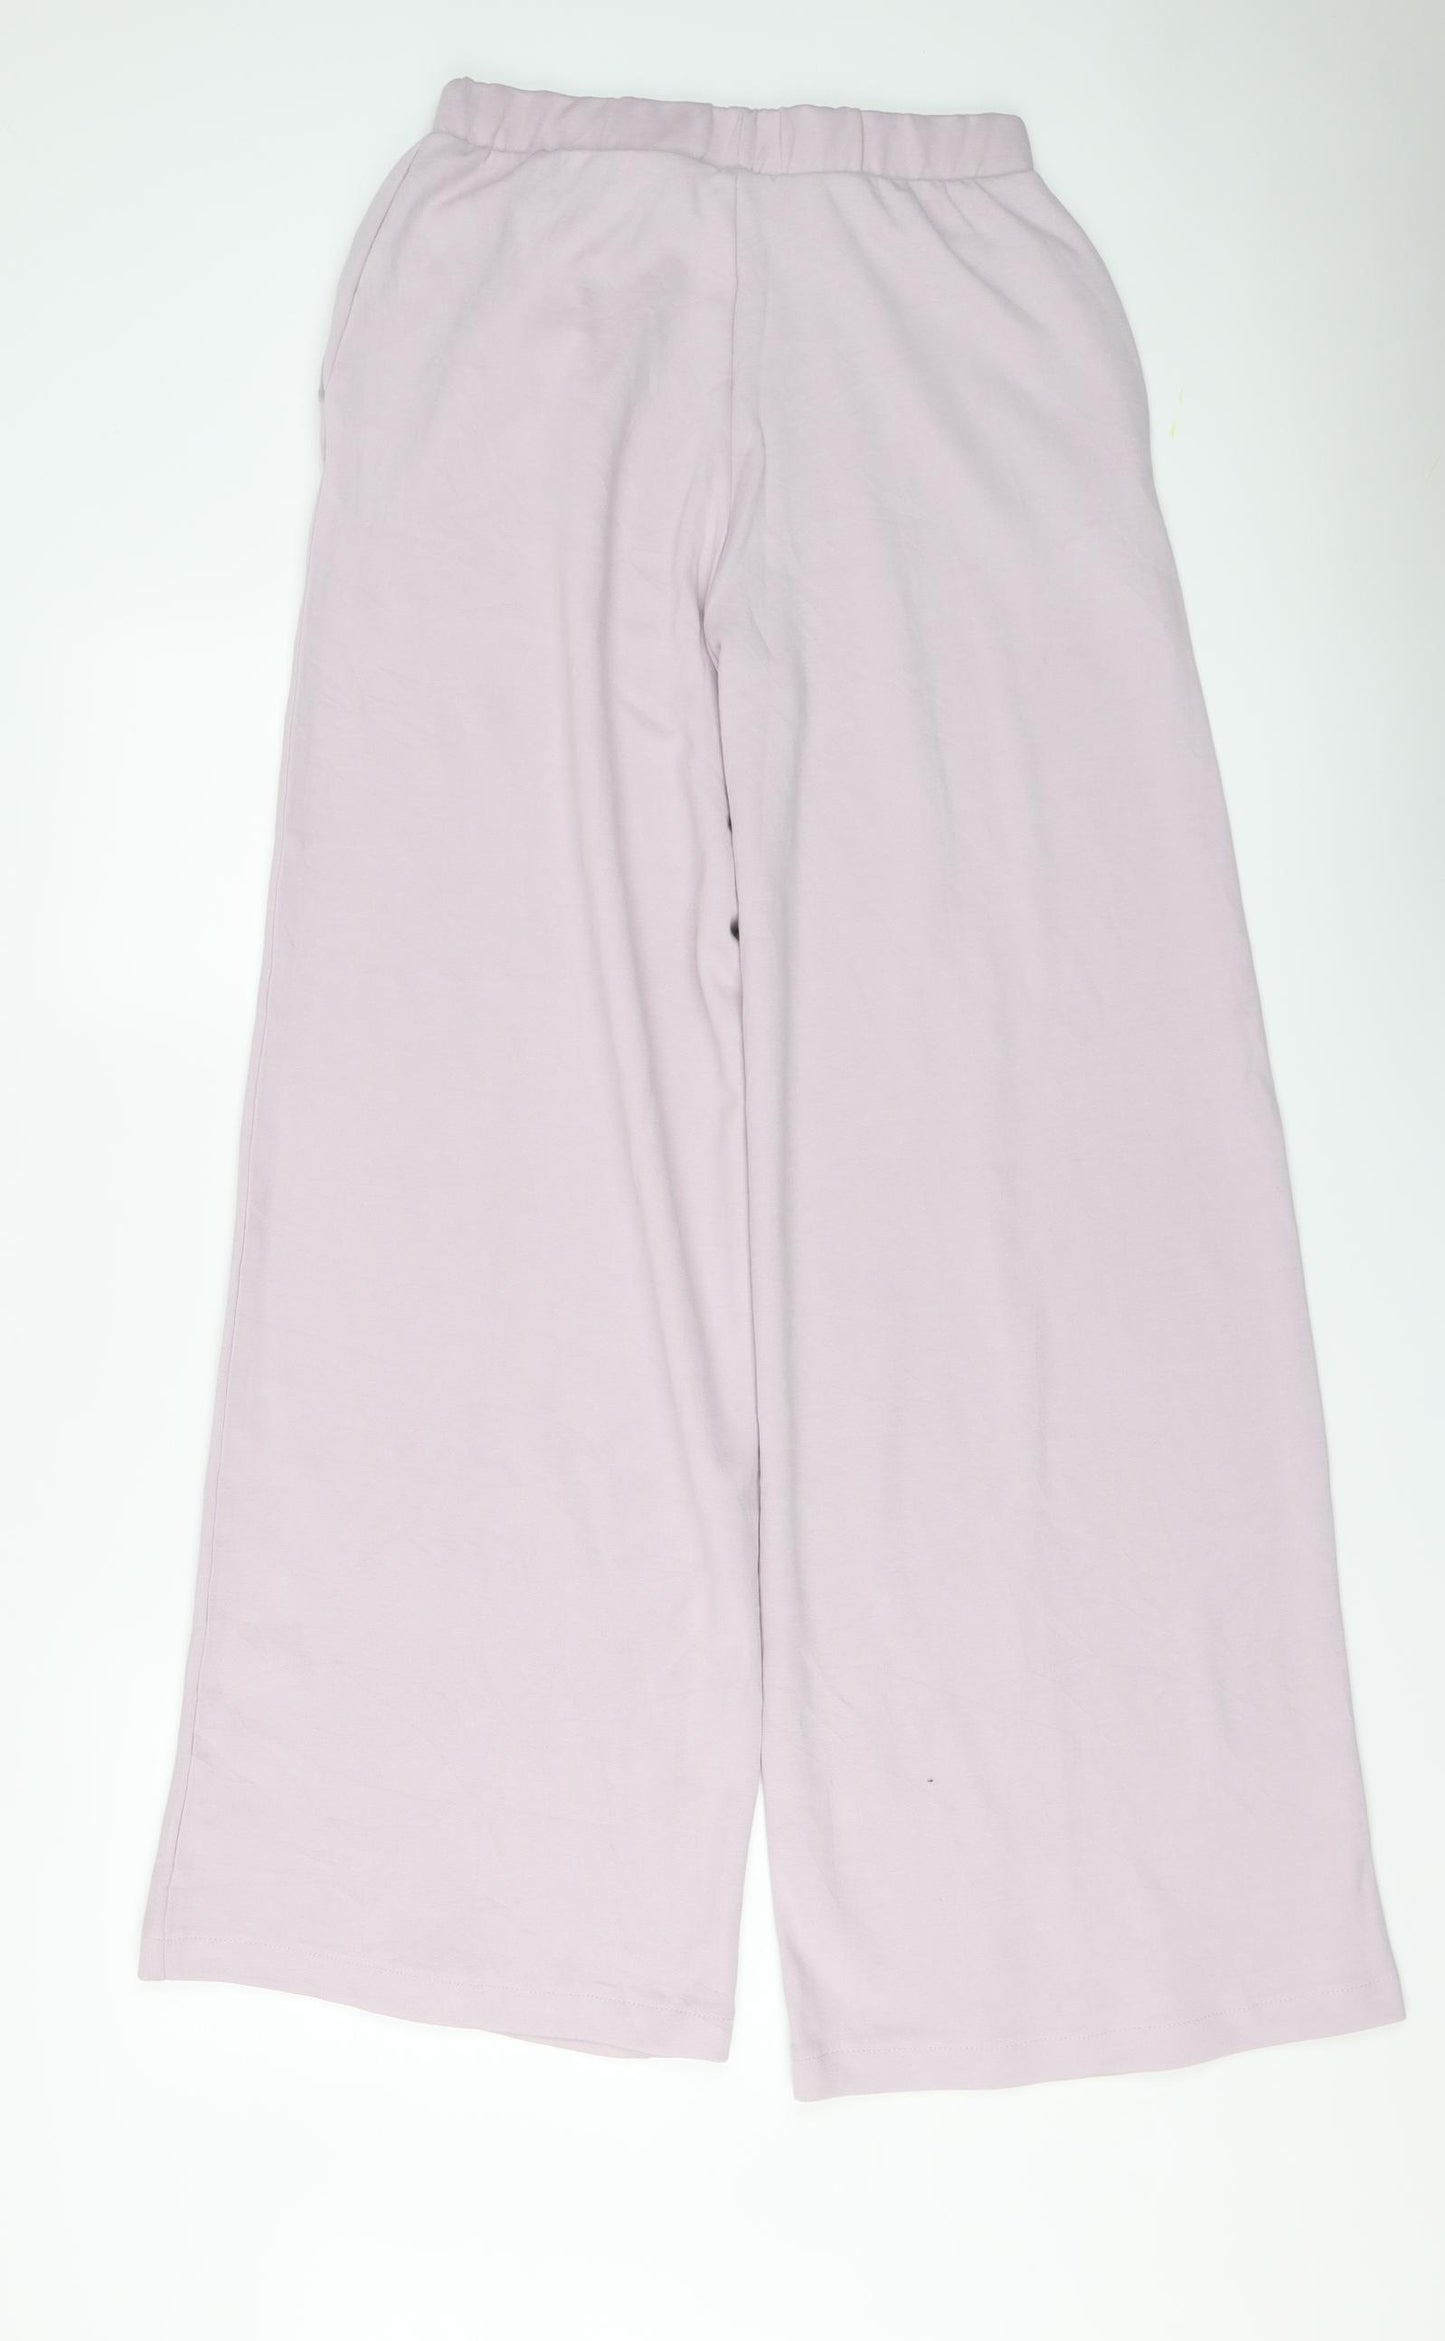 Zara Womens Purple Cotton Trousers Size M L31 in Regular